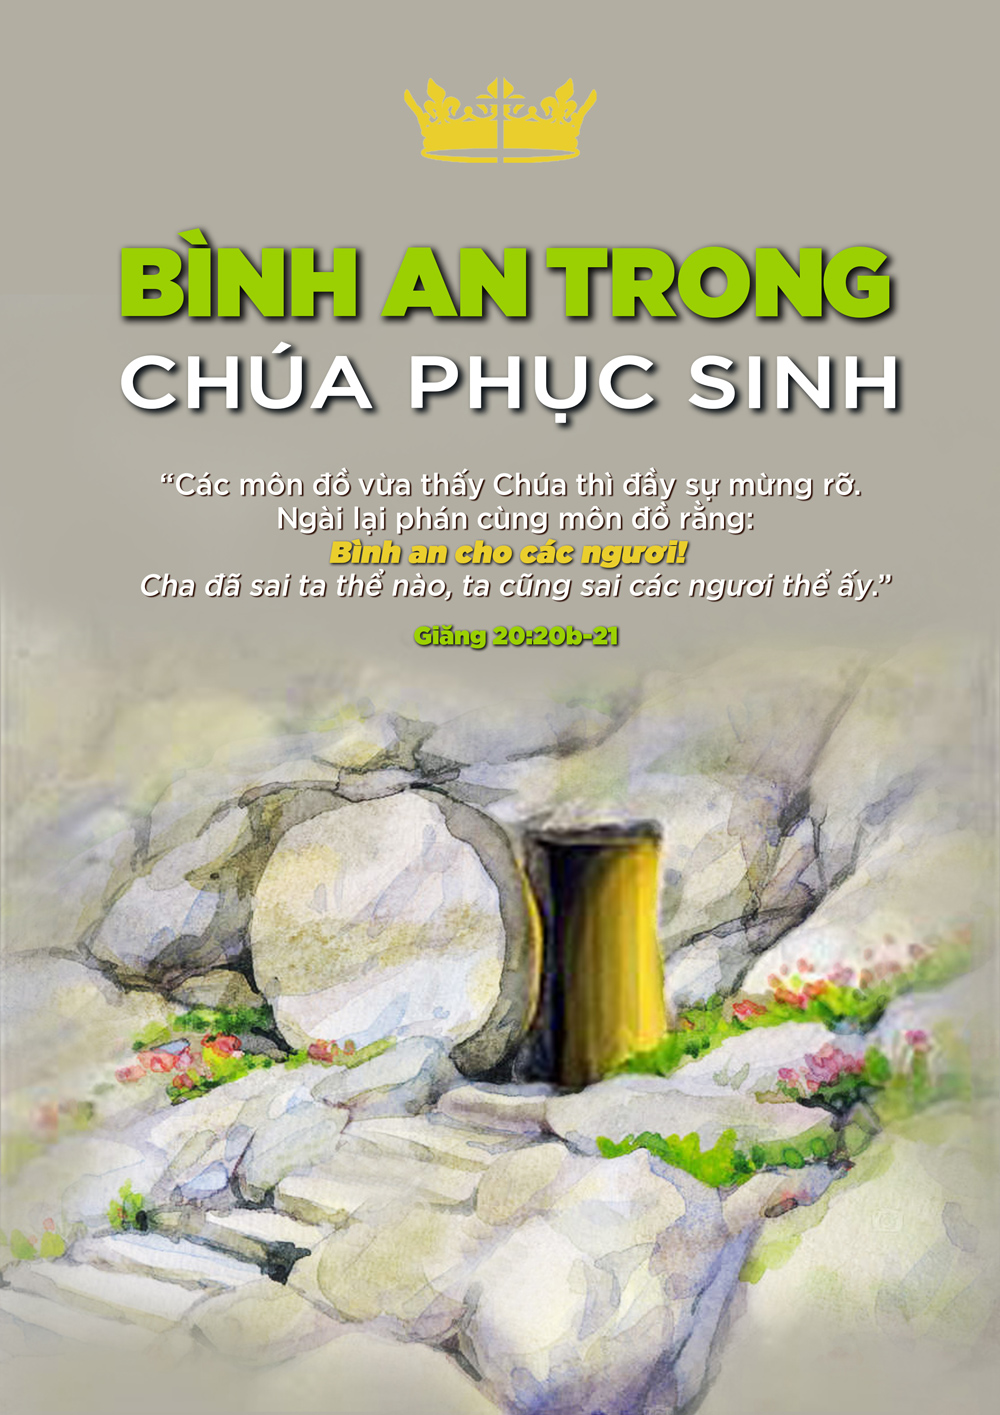 05_ps - Hội Thánh Tin Lành Việt Nam